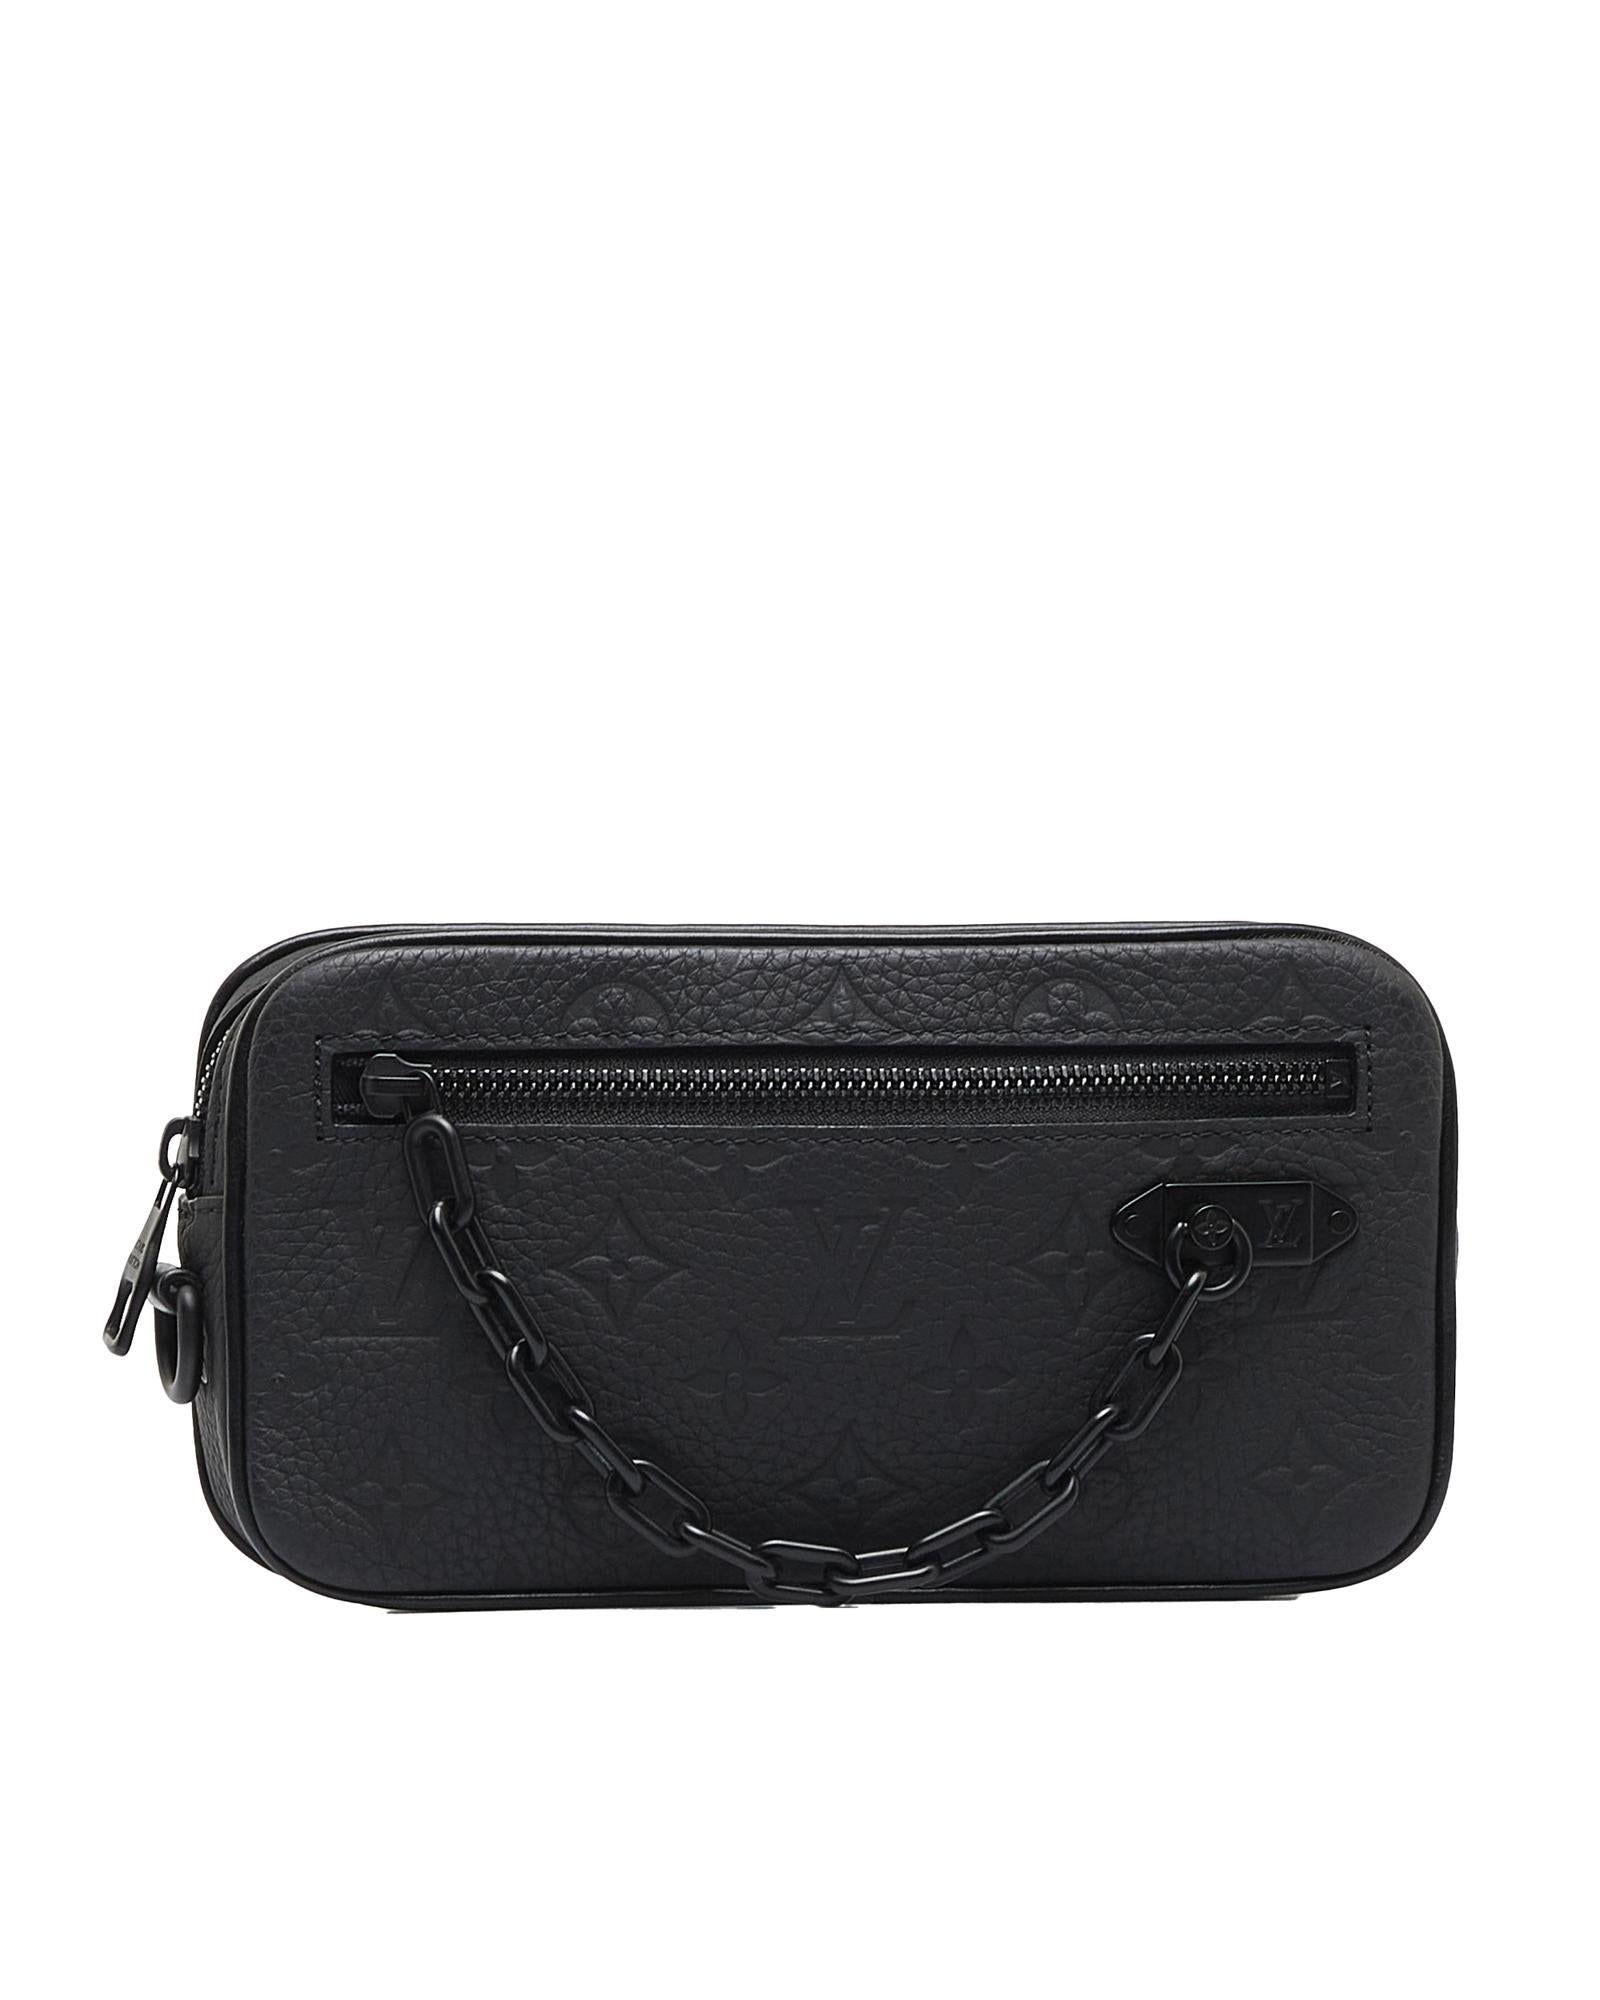 LOUIS VUITTON Black Taurillon Leather Volta Bag/ Hand bag